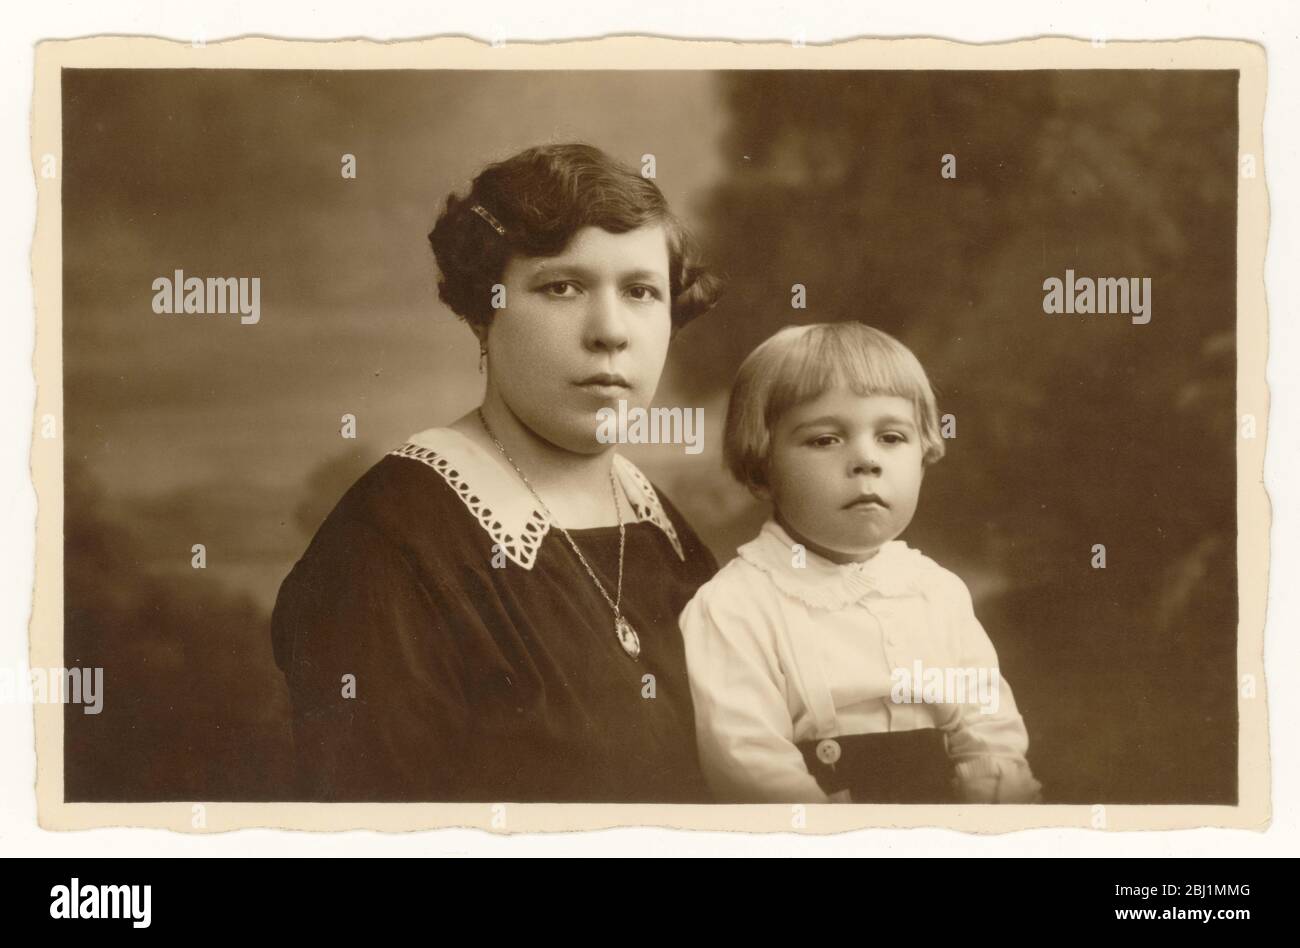 Photo du jeune garçon du début des années 1900, âgé d'environ 3 ans, avec bob coiffure, assis avec sa mère, tous deux sérieusement, Royaume-Uni vers 1925 Banque D'Images